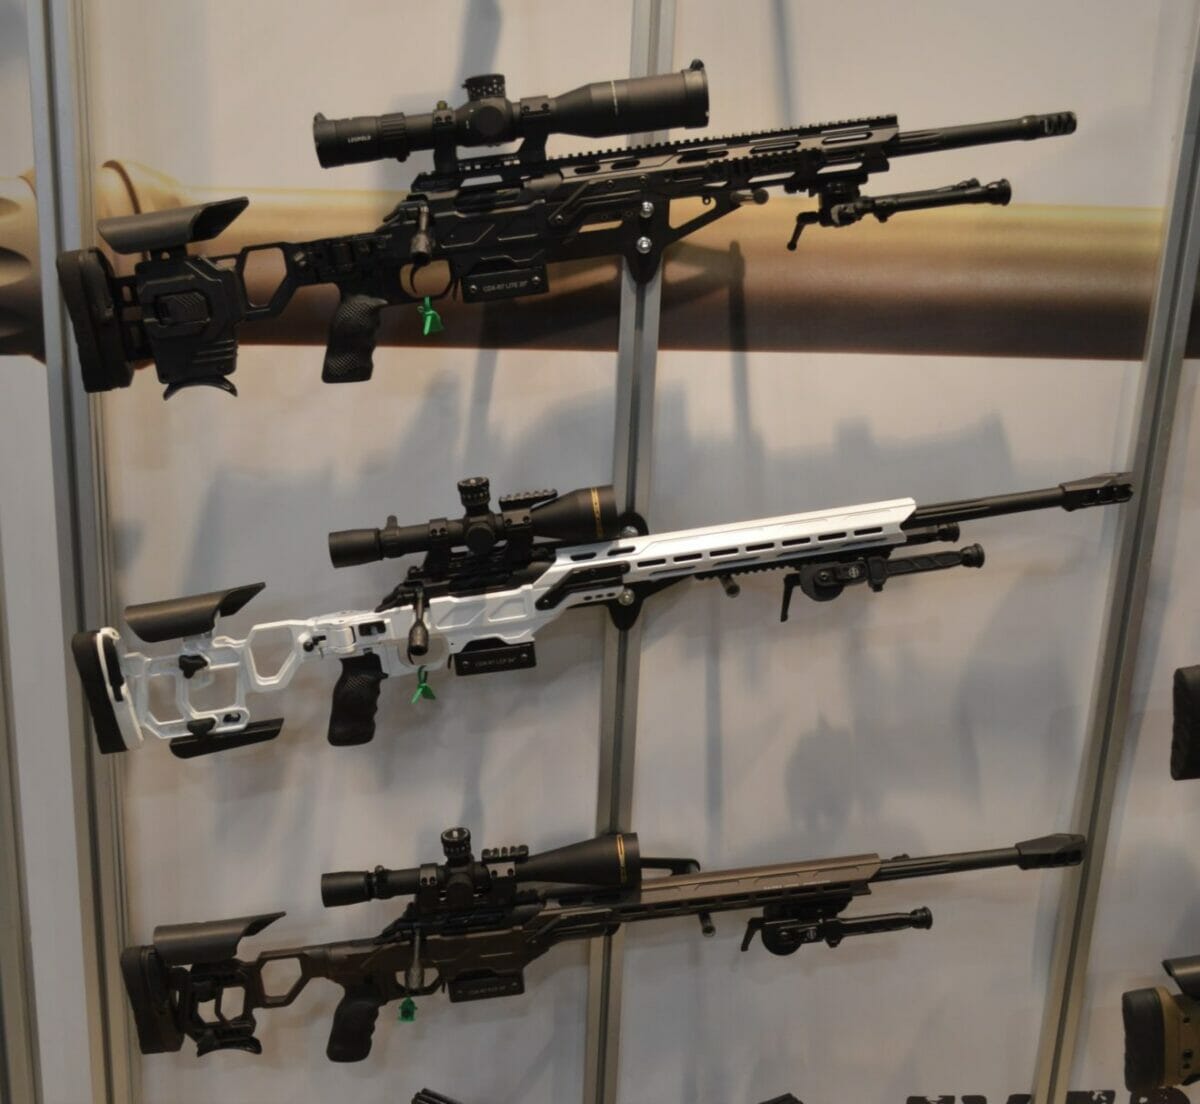 Cadex Defence Firearms